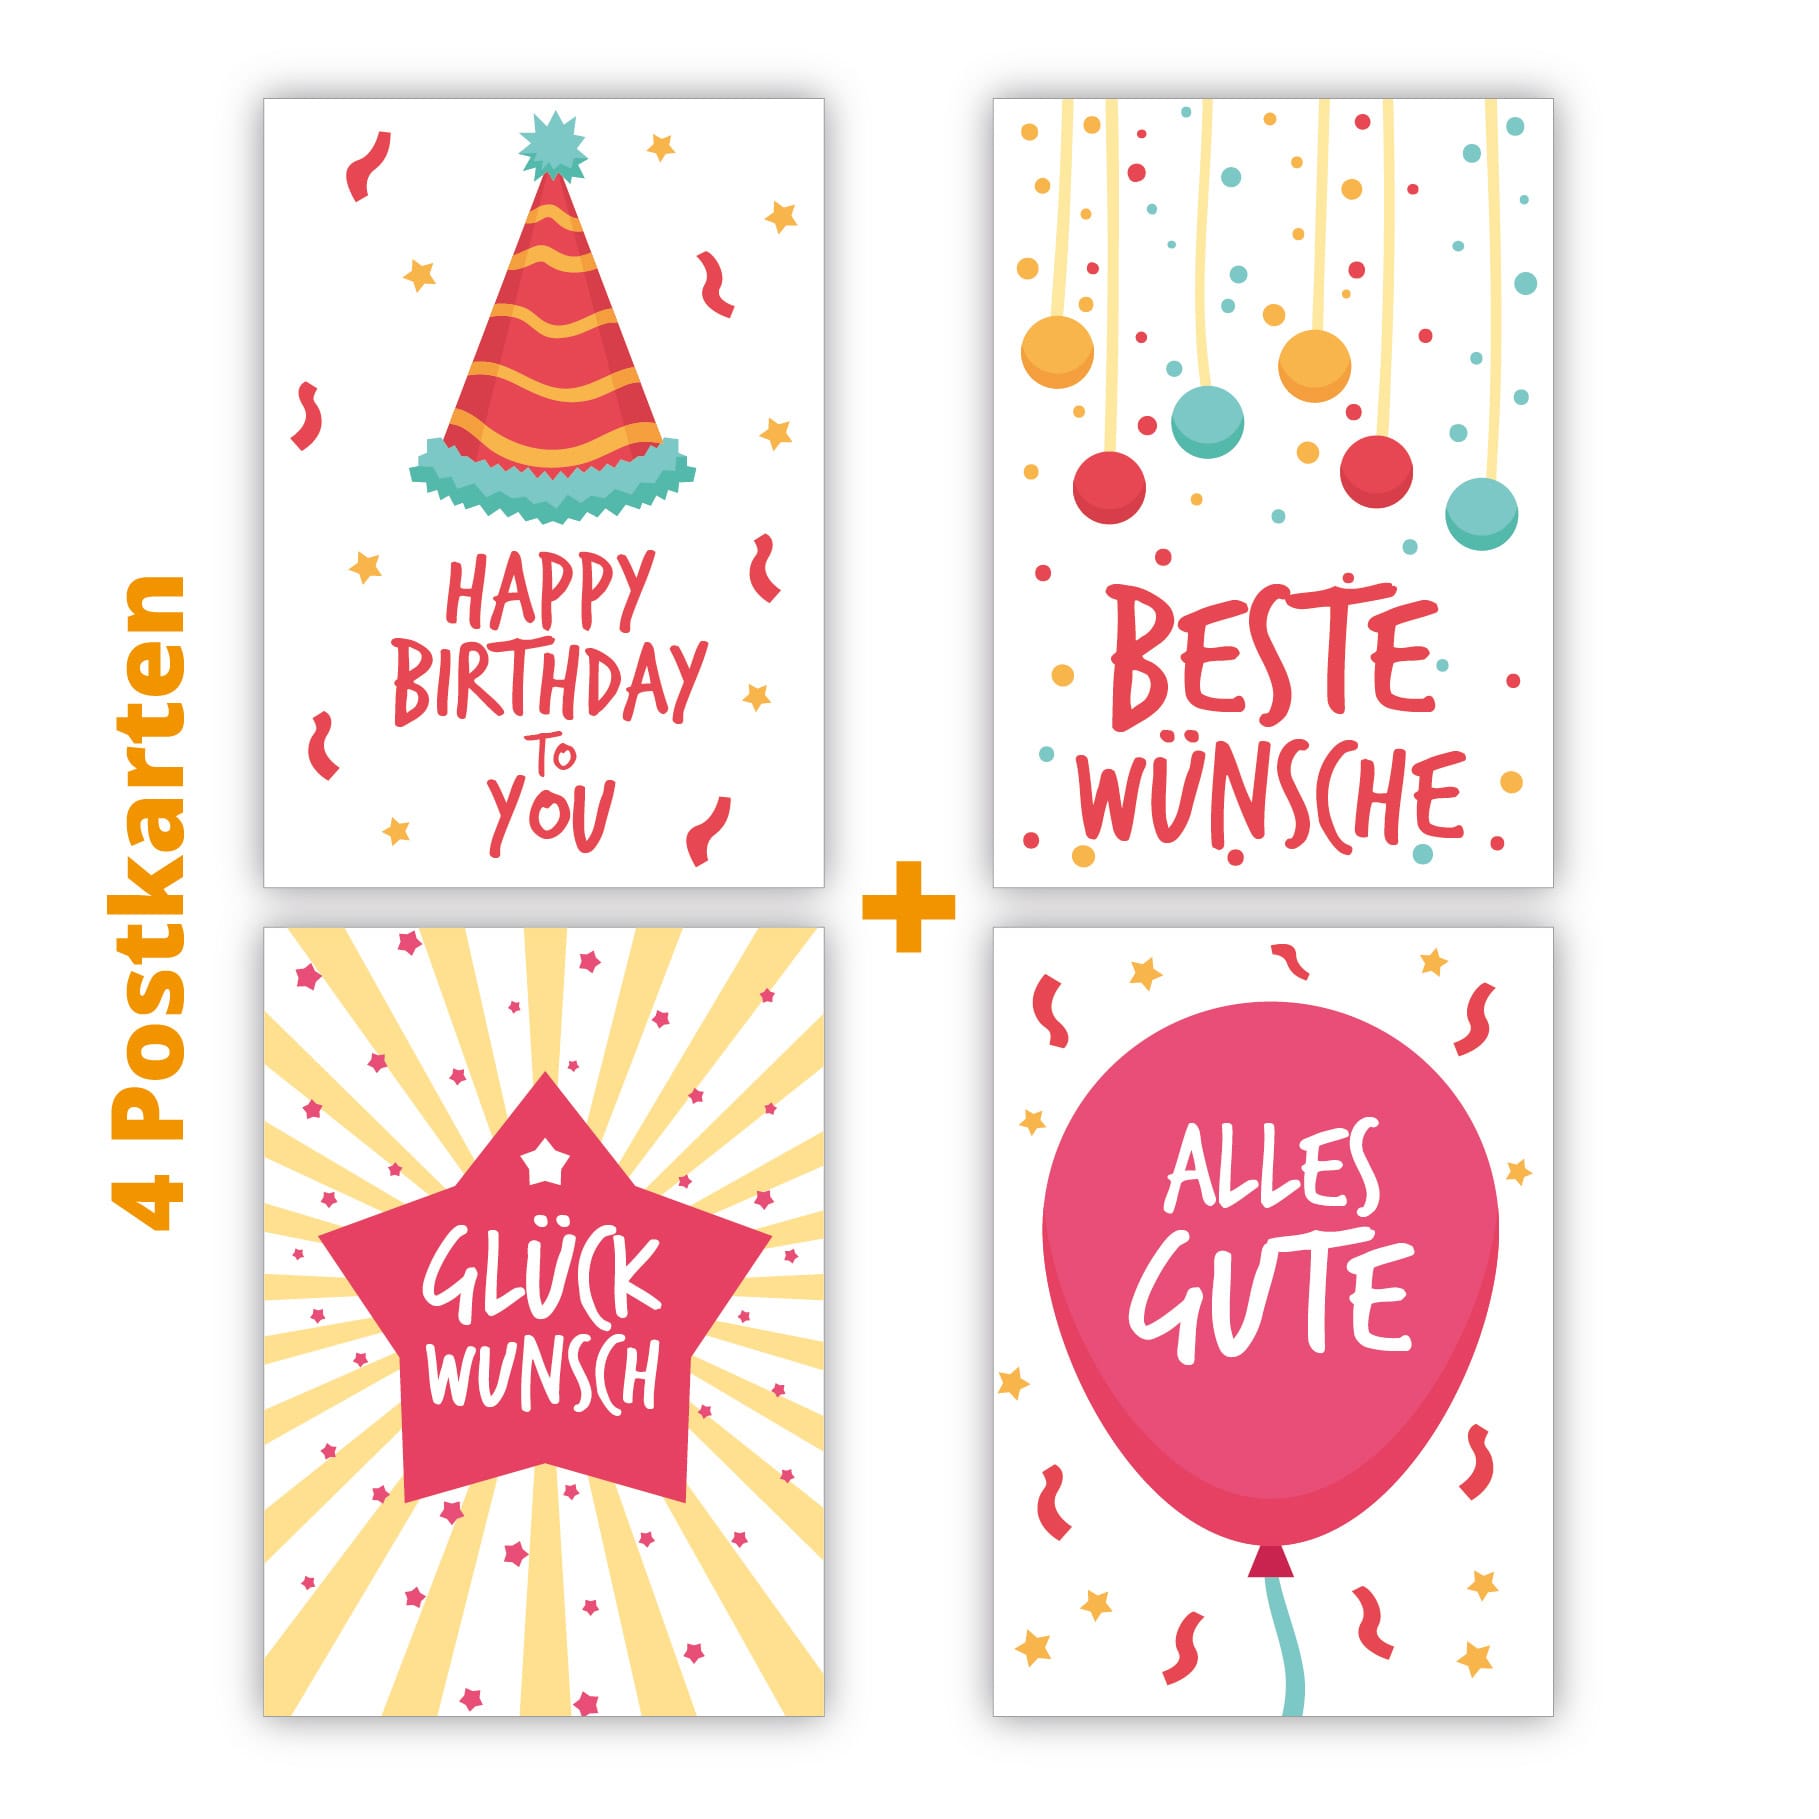 Kartenkaufrausch Postkarten in rosa: coole Geburtstags Postkarten